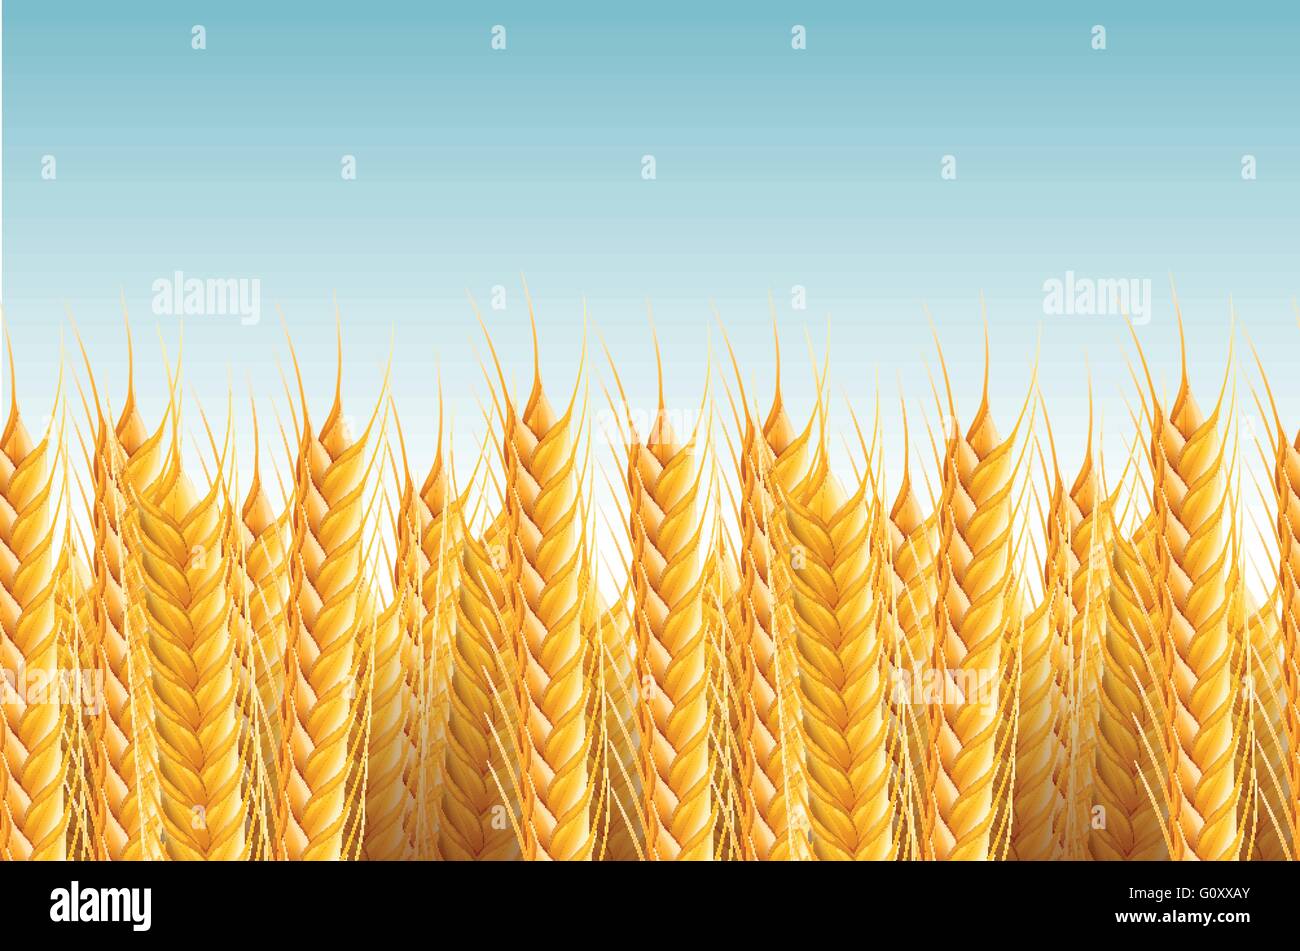 Realistische nahtlose Weizen Hintergrund Vektorgrafik. Stock Vektor